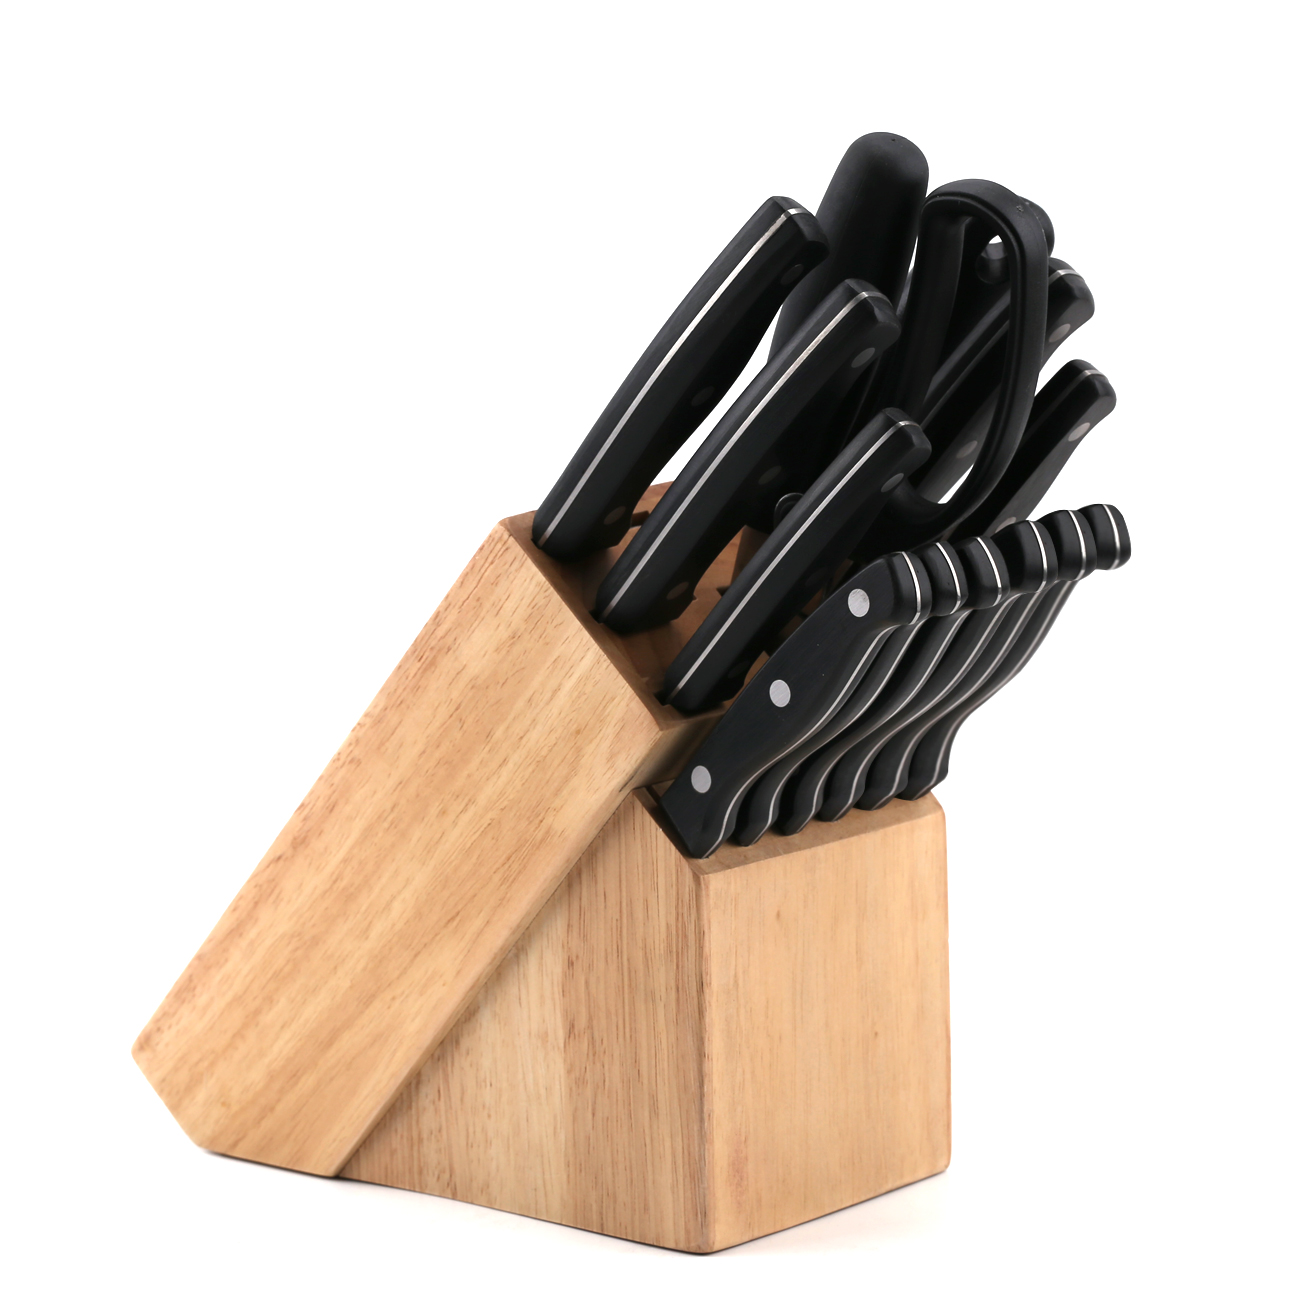 مجموعة سكاكين المطبخ الممتازة J104-14 قطعة ، الفولاذ المقاوم للصدأ عالي الكربون- ZX | سكين مطبخ ، أدوات مطبخ ، قالب كيك سيليكون ، لوح تقطيع ، مجموعات أدوات الخبز ، سكين شيف ، سكين ستيك ، سكين تقطيع ، سكين متعدد الاستخدامات ، سكين تقشير ، حاملة سكاكين ، حامل سكاكين ، سكين سانتوكو ، سكين طفل صغير ، سكين بلاستيك ، طلاء غير لاصق سكين ، سكين ملون ، سكين من الفولاذ المقاوم للصدأ ، فتاحة علب ، فتاحة زجاجات ، مصفاة شاي ، مبشرة ، مضرب بيض ، أداة مطبخ من النايلون ، أداة مطبخ من السيليكون ، قاطعة ملفات تعريف الارتباط ، مجموعة سكاكين الطبخ ، مبراة سكاكين ، مقشرة ، سكين كعكة ، سكين جبن ، بيتزا سكين ، ملعقة سيليكون ، ملعقة سيليكون ، ملقط طعام ، سكين مزور ، مقص مطبخ ، سكاكين خبز الكيك ، سكاكين طبخ الأطفال ، سكين نحت